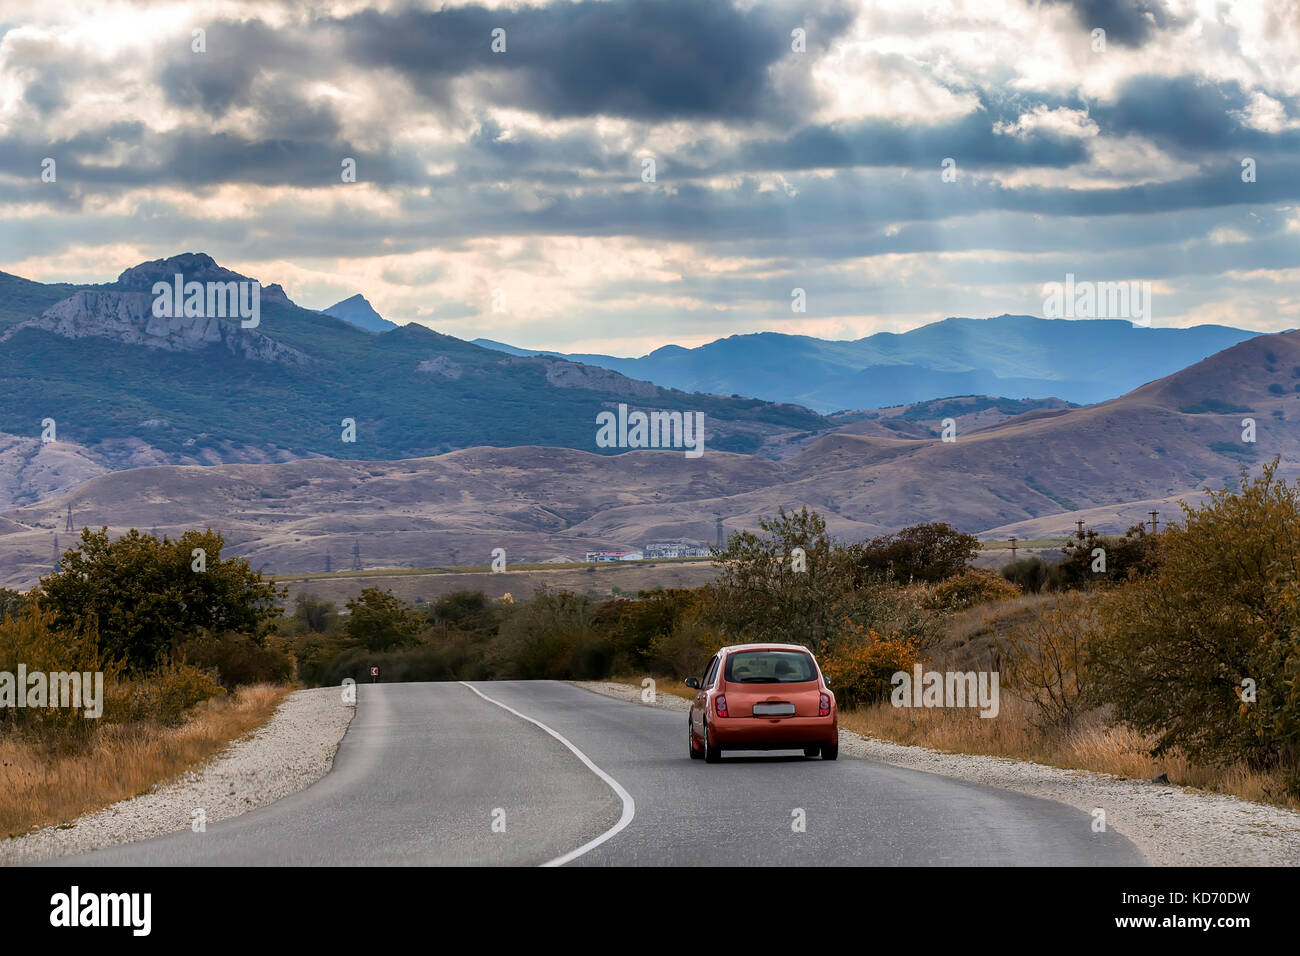 La rossa vettura viaggia lungo l'autostrada, attorno a un bel paesaggio. bluastro montagna tonante sotto il cielo coperto di nuvole Foto Stock